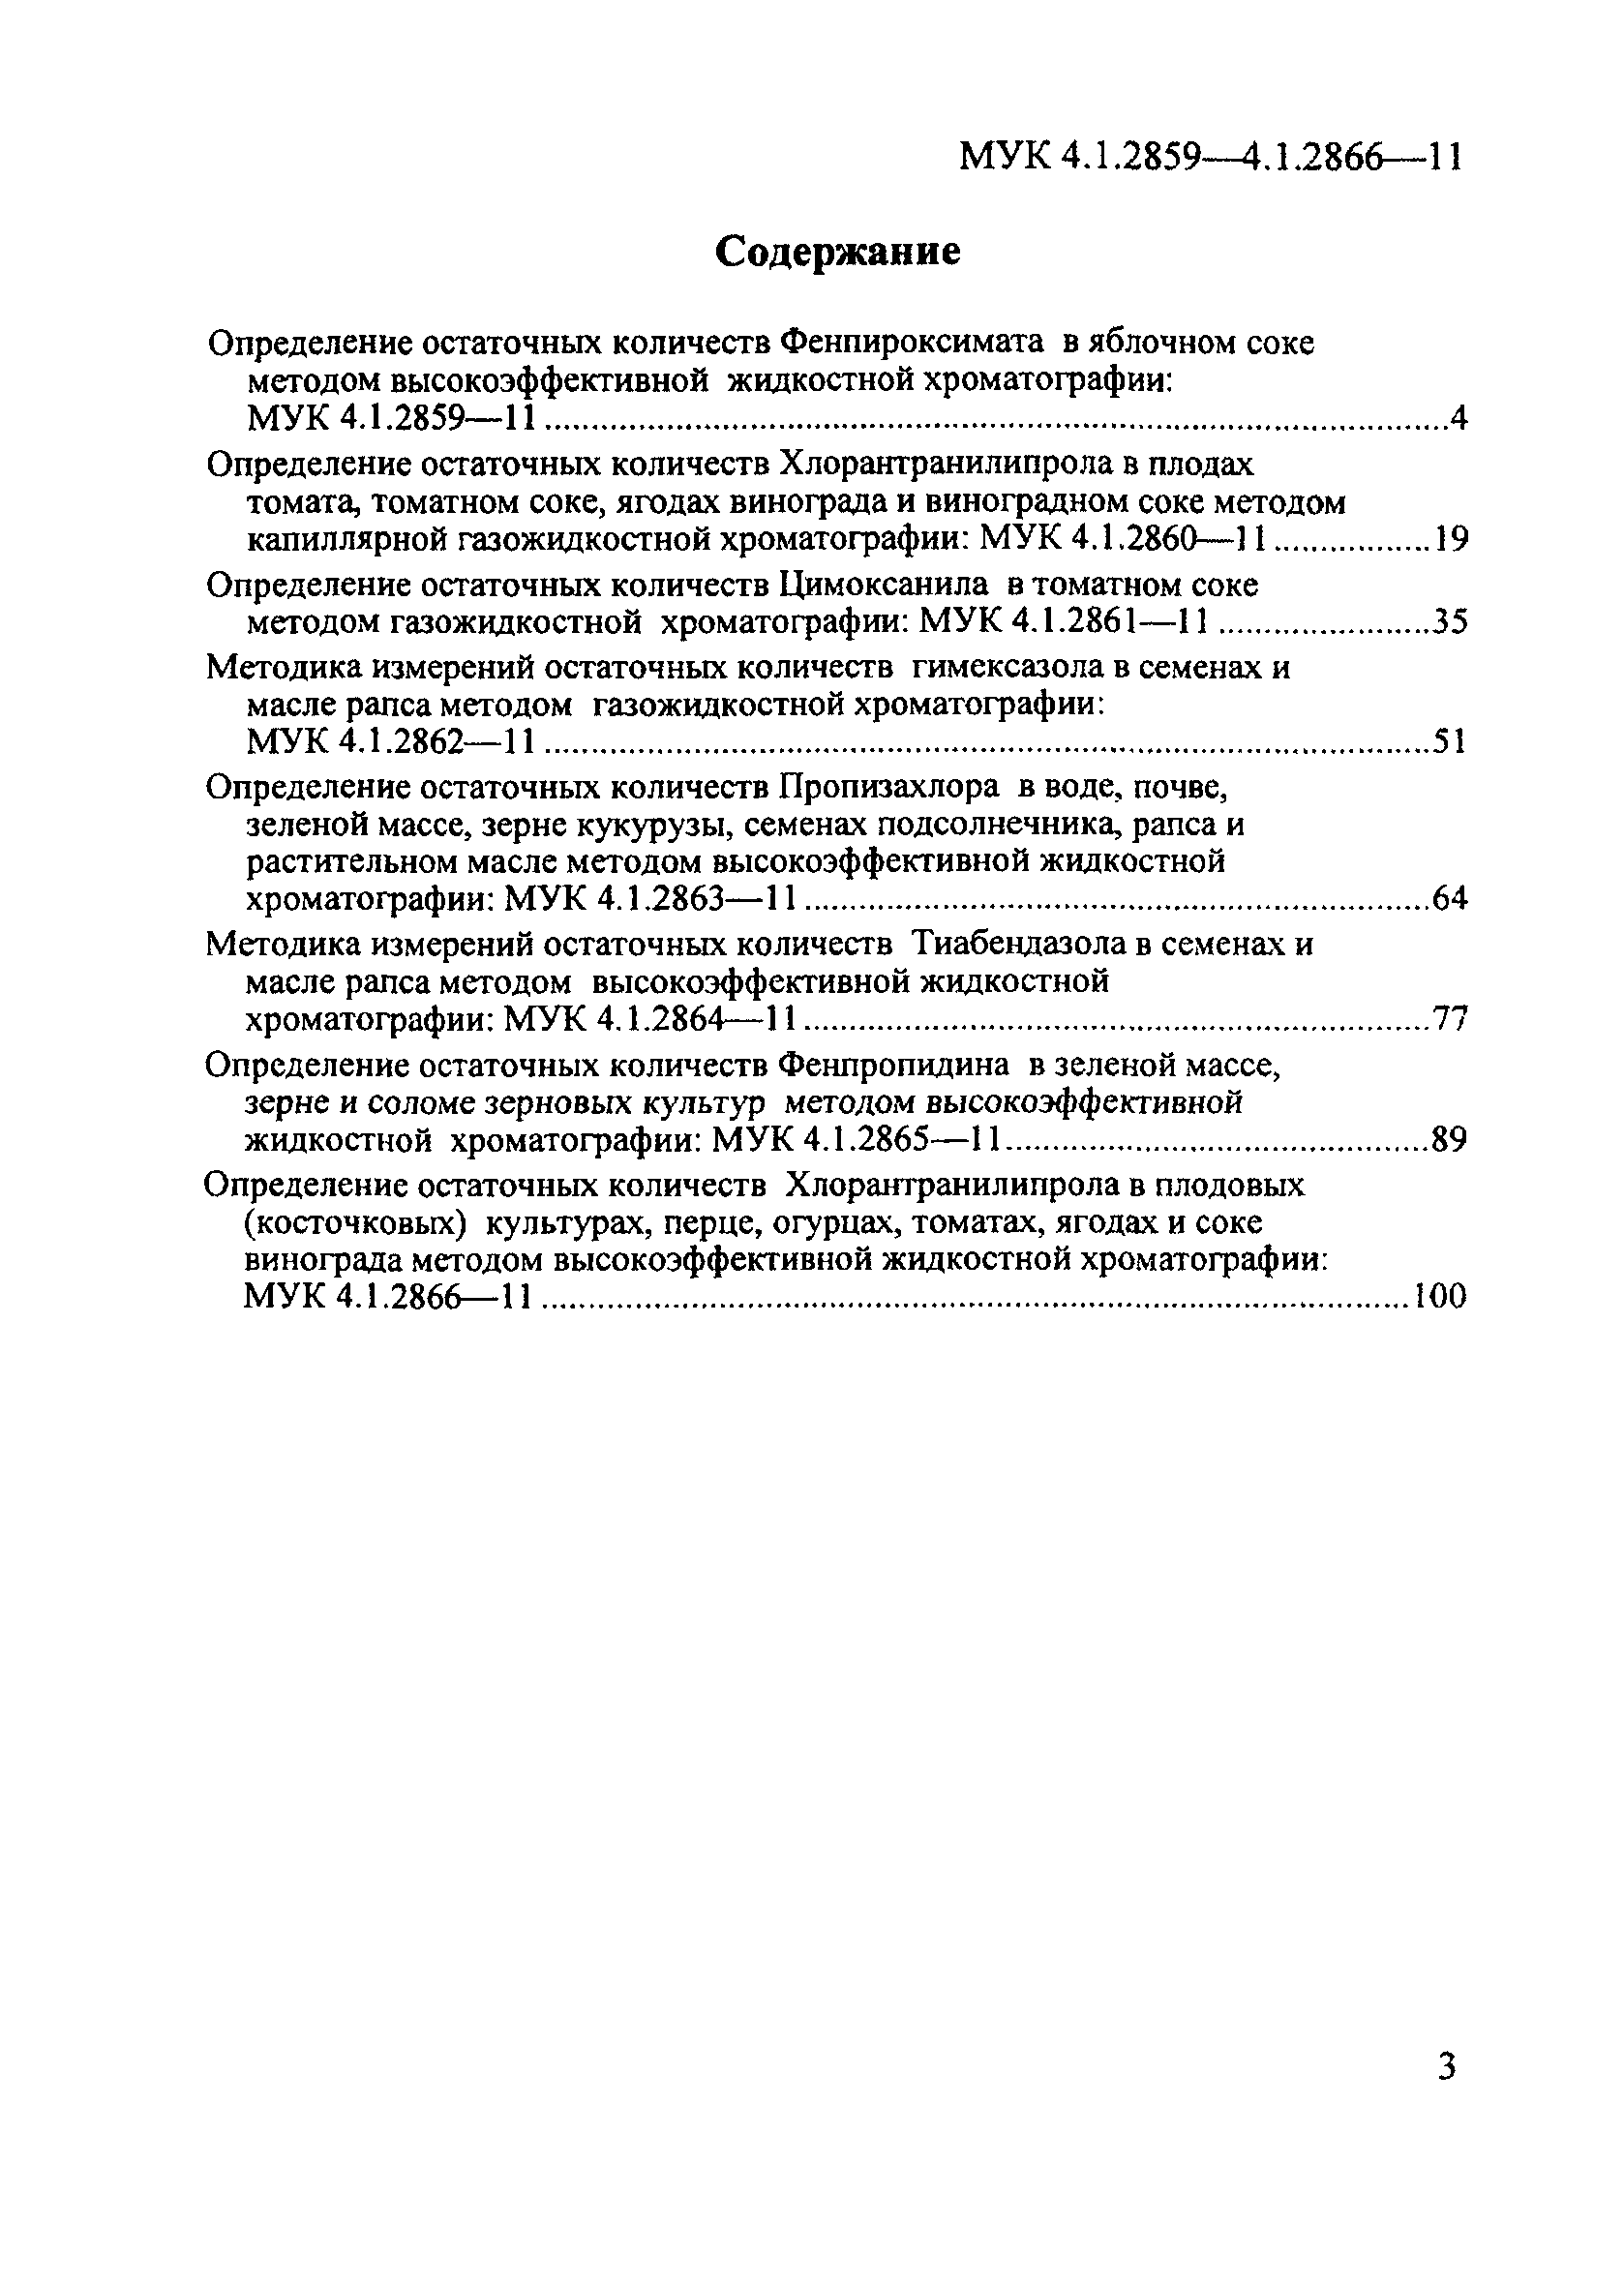 МУК 4.1.2865-11